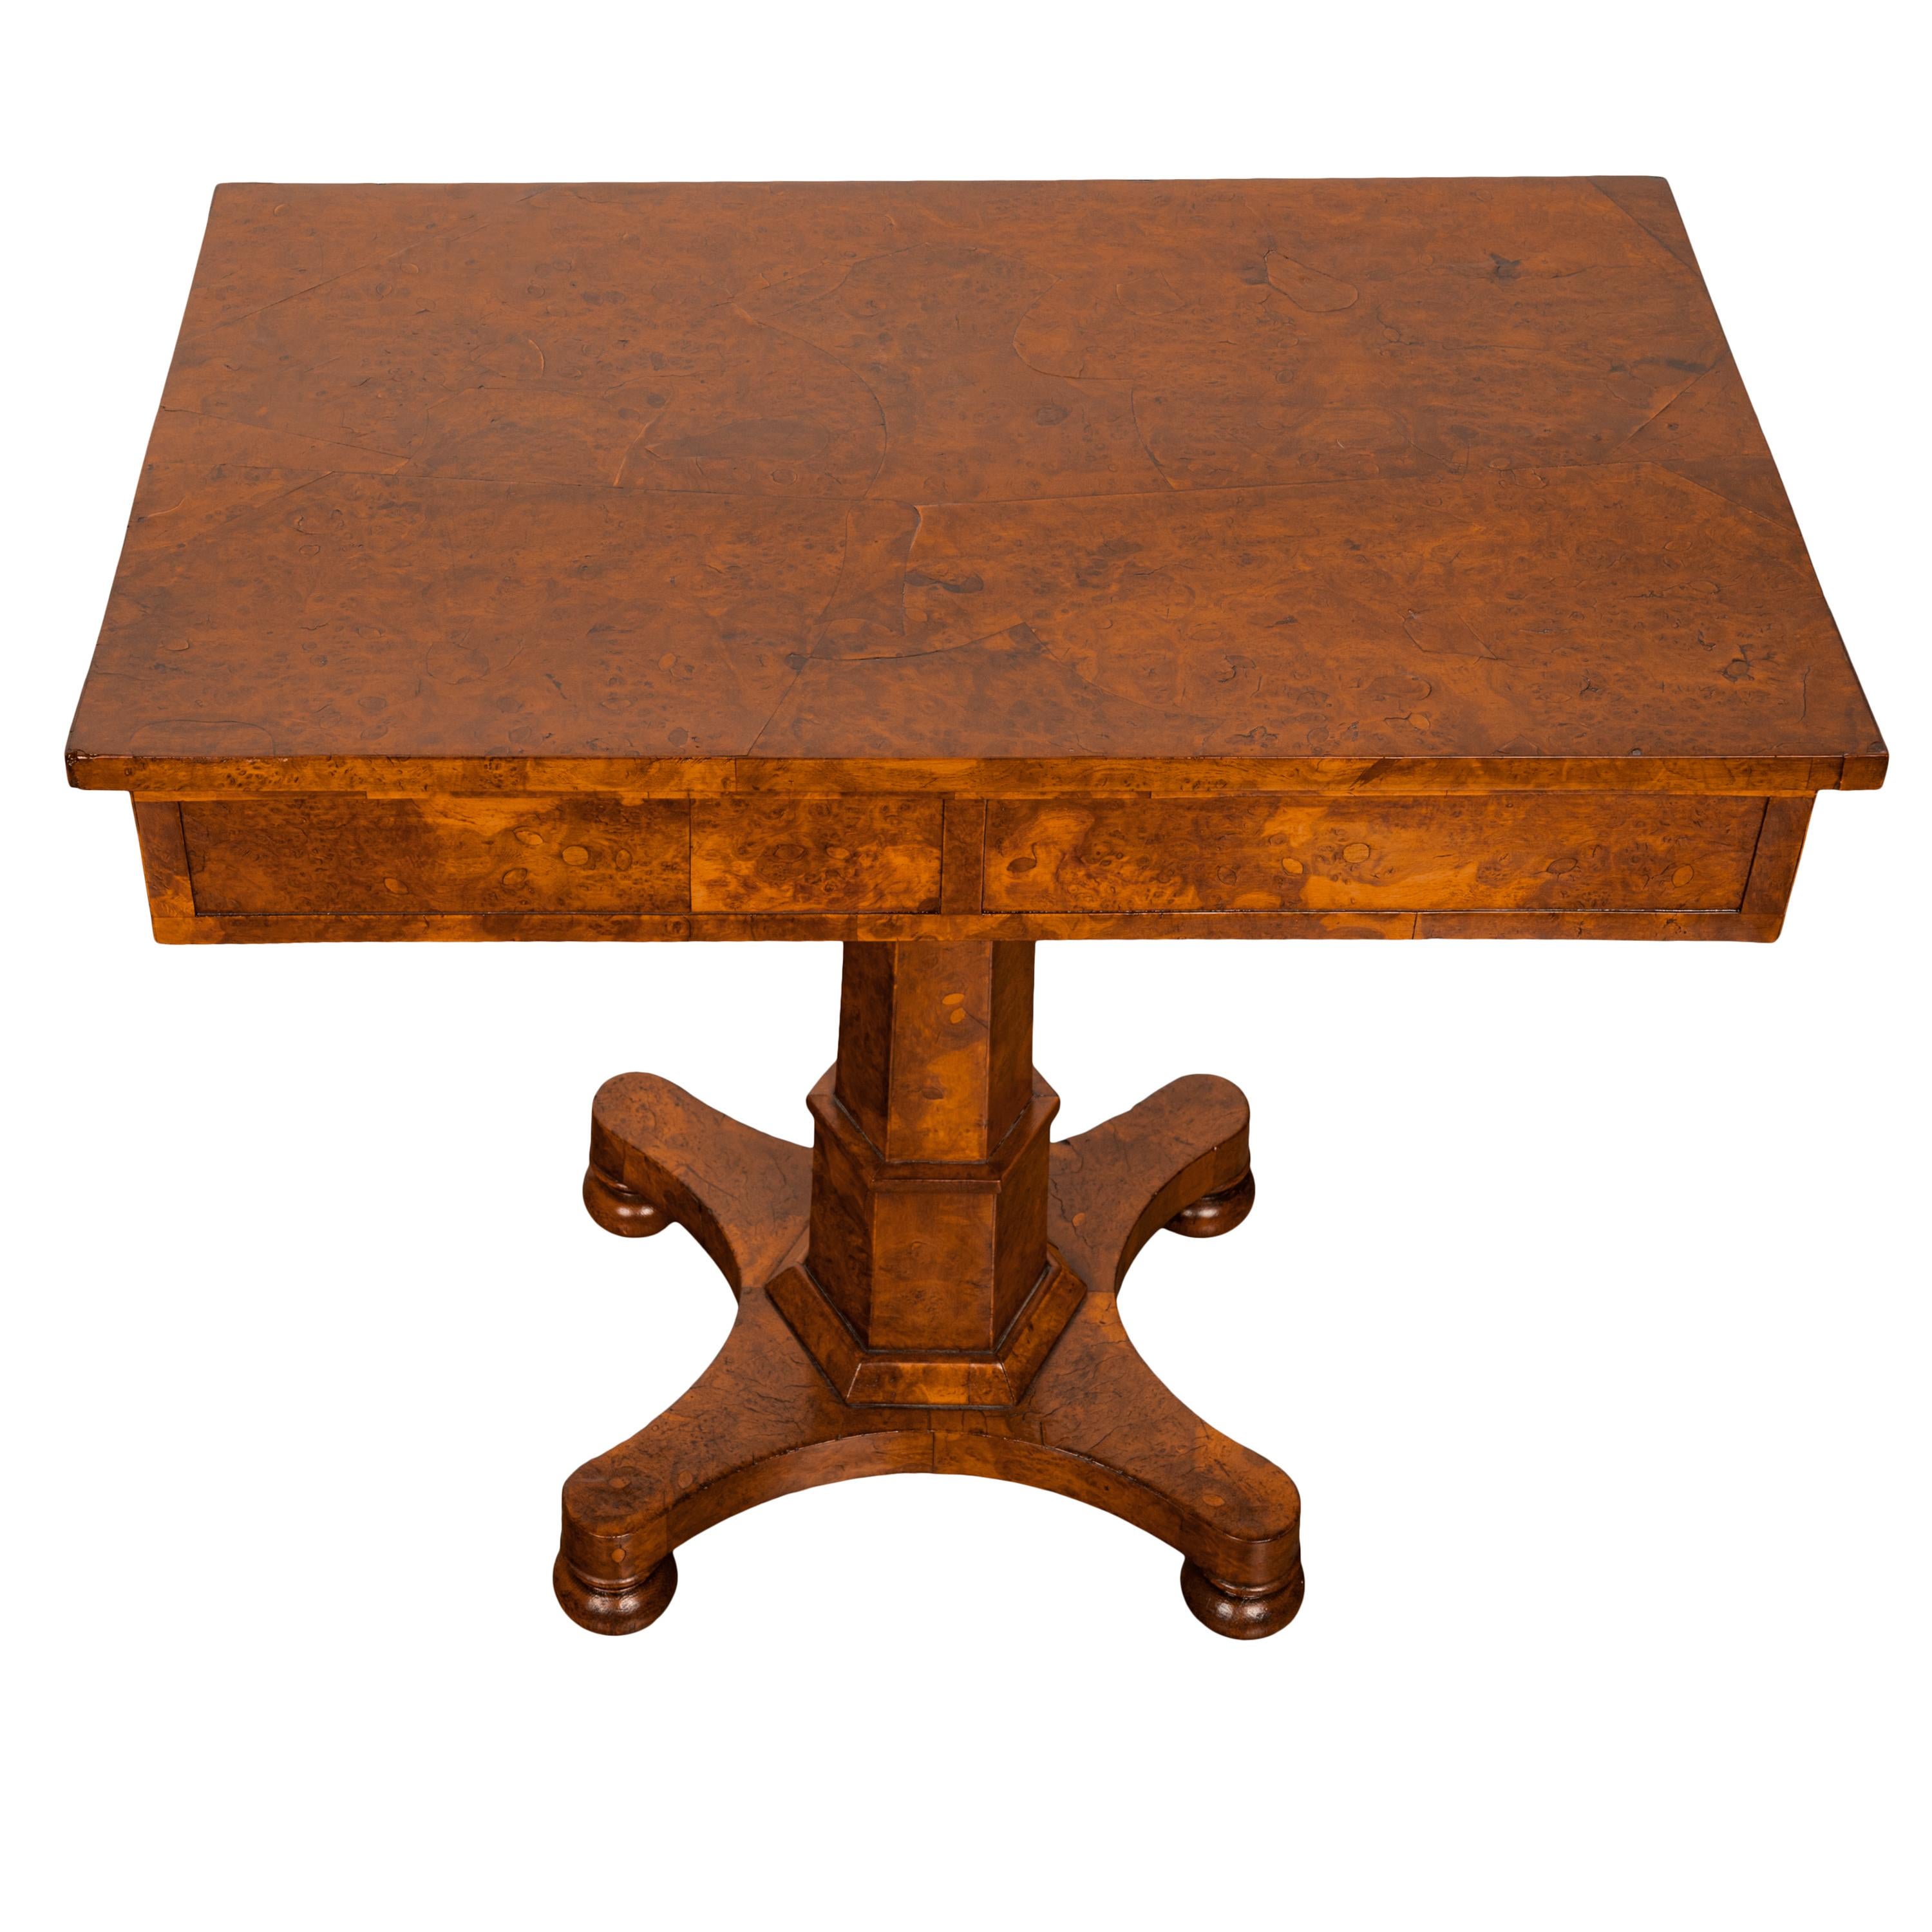 Très rare table d'appoint à piédestal en ronce d'orme de la fin de la Régence de George IV, vers 1825.
La table est fabriquée à partir d'une loupe d'orme des plus incroyables, le plateau rectangulaire à grain très figuré avec un tiroir à chaque